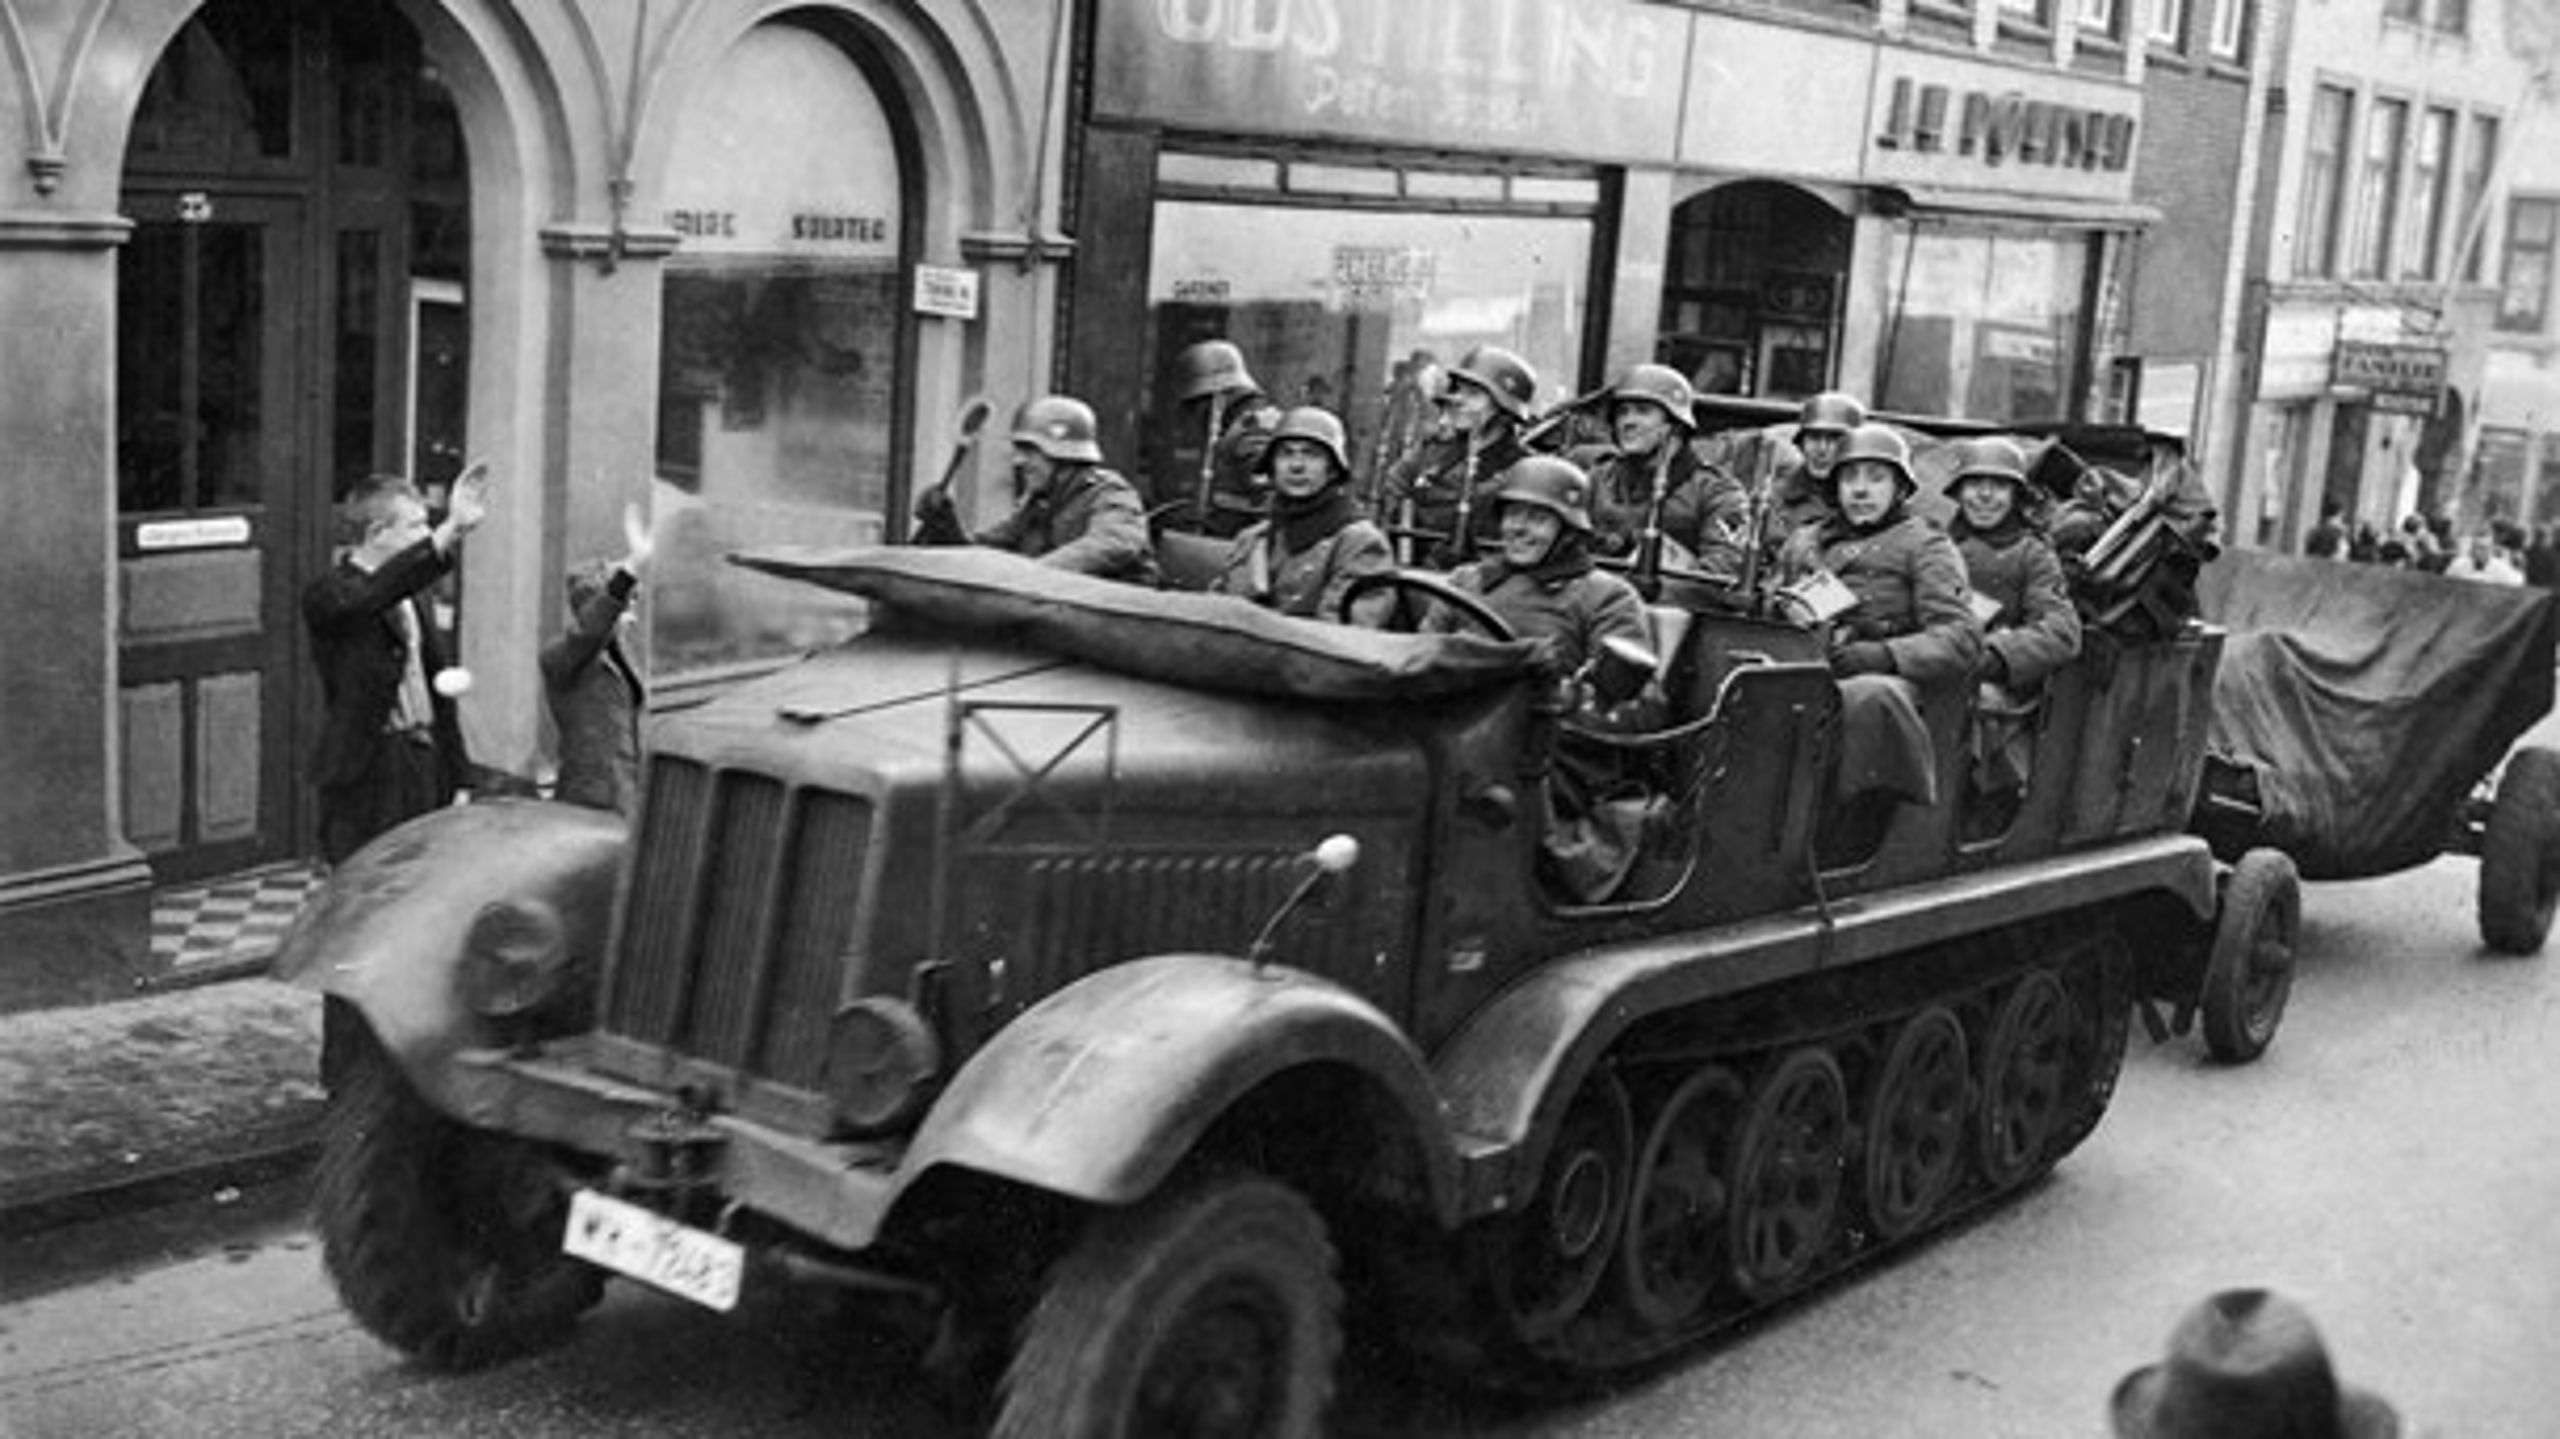 SMERTEPUNKT: Et af de sårbare steder i Danmarks historie er besættelsen i april 1940, skriver Peter Skov-Jakobsen.